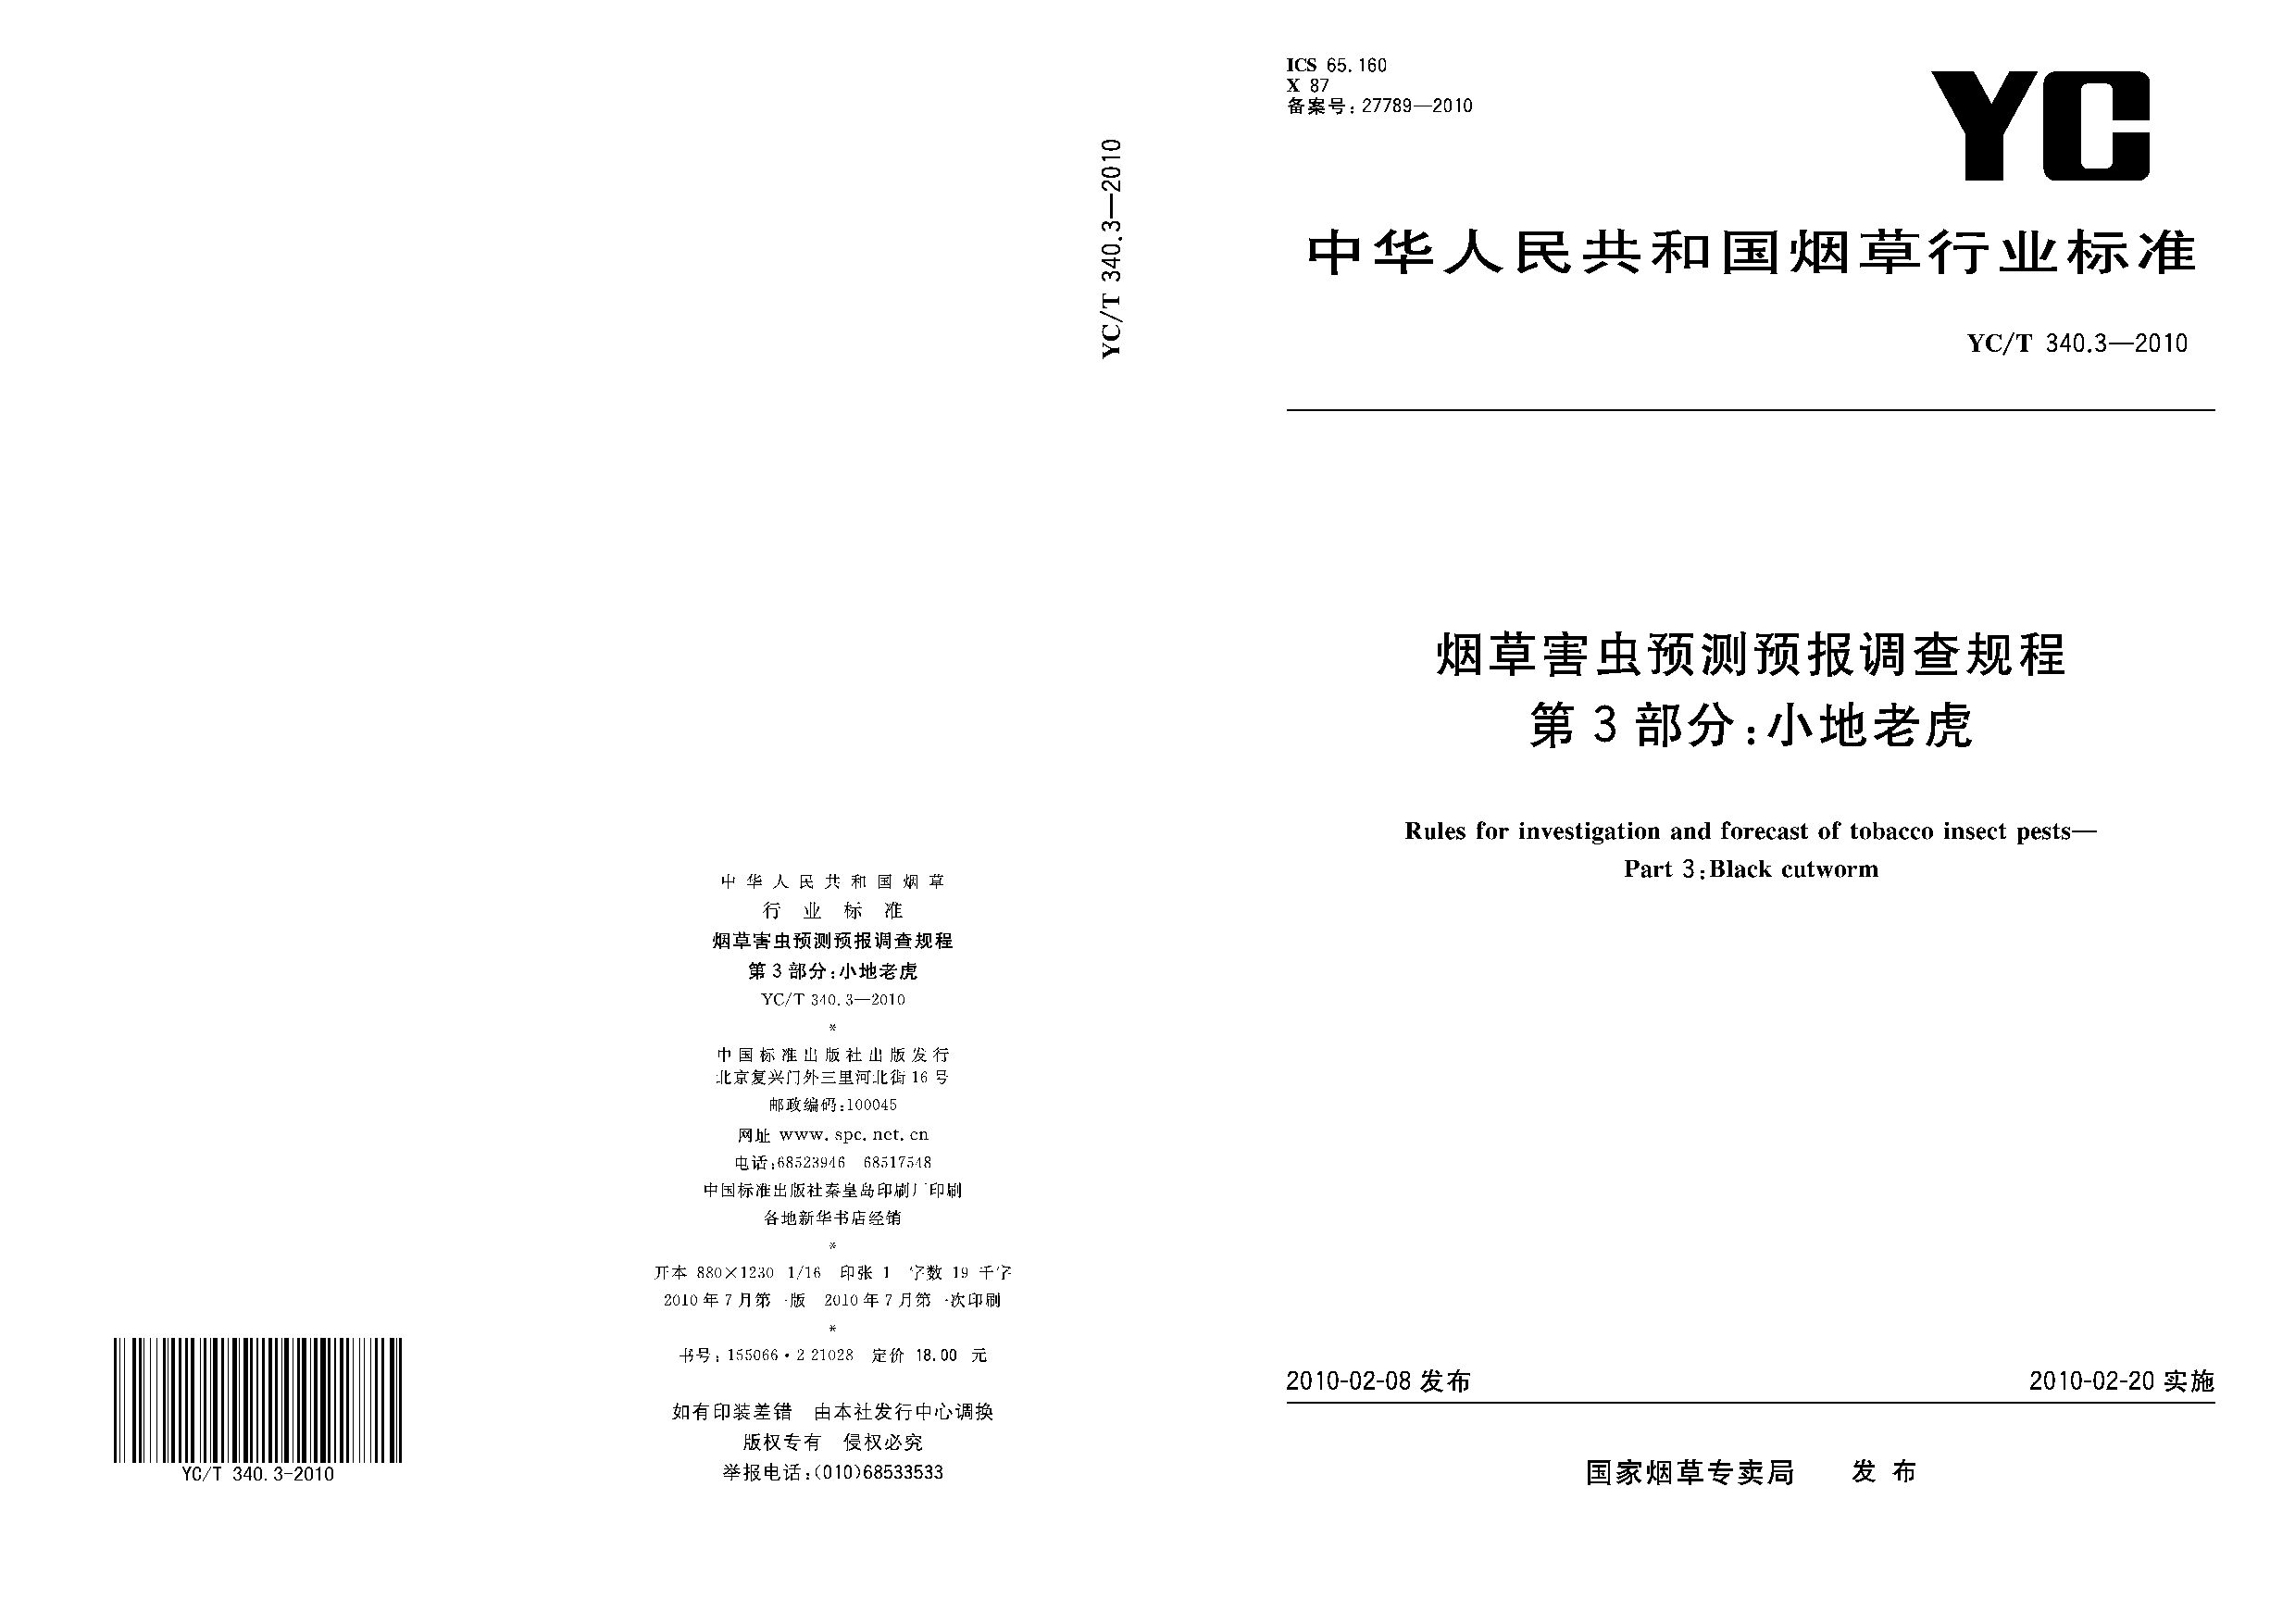 YC/T 340.3-2010封面图